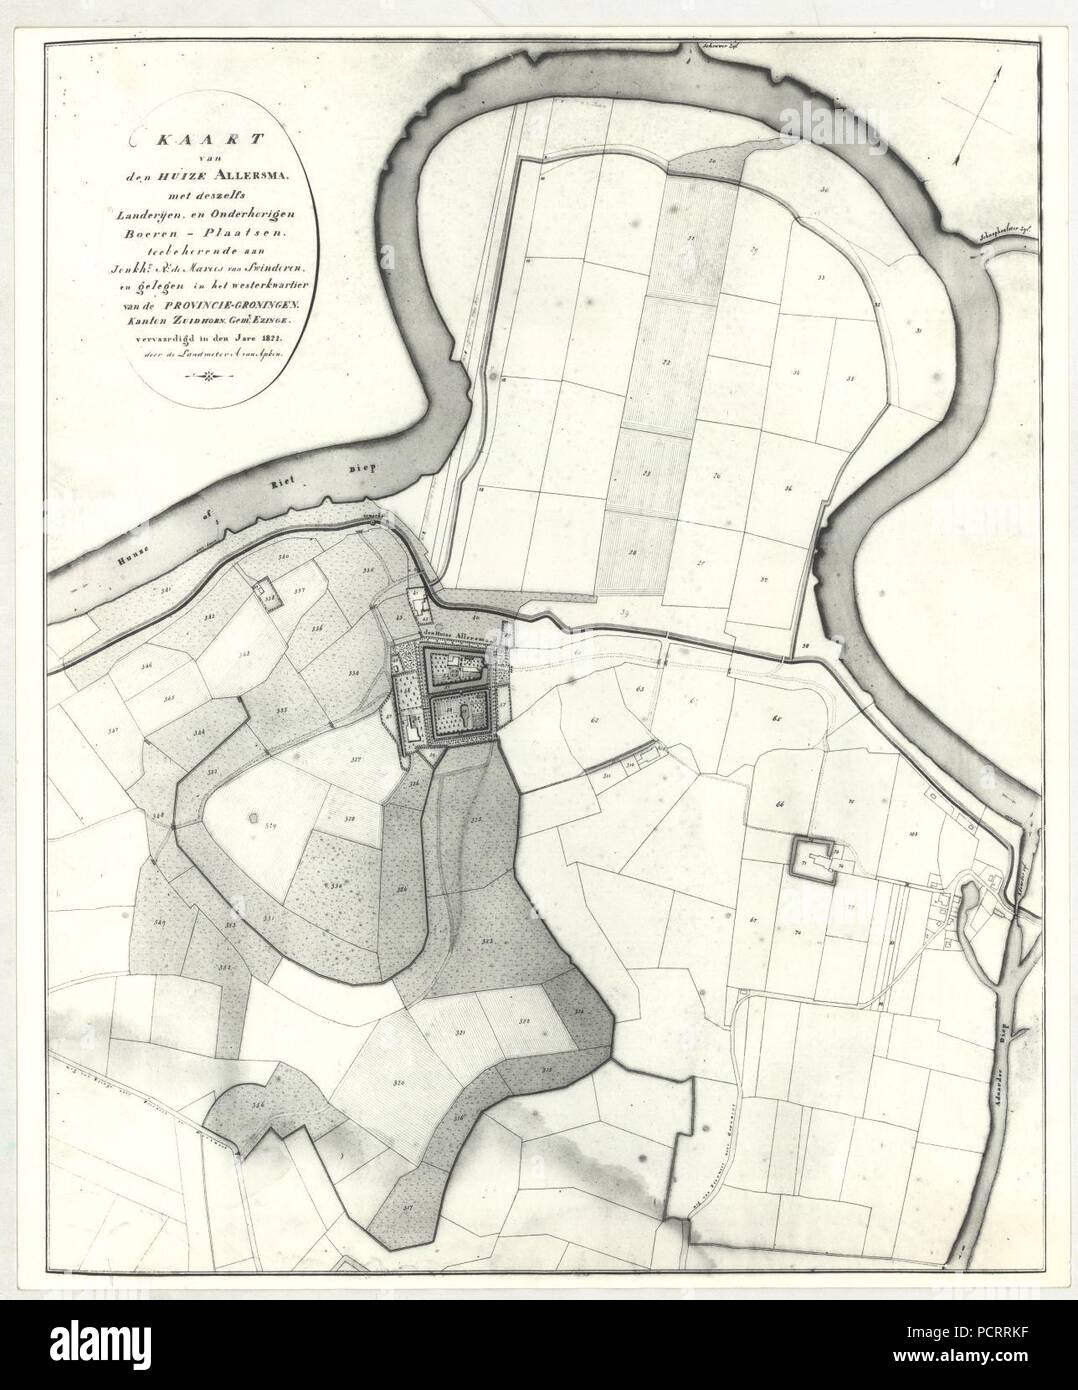 Allersma - kaart Apken 1822. Stock Photo